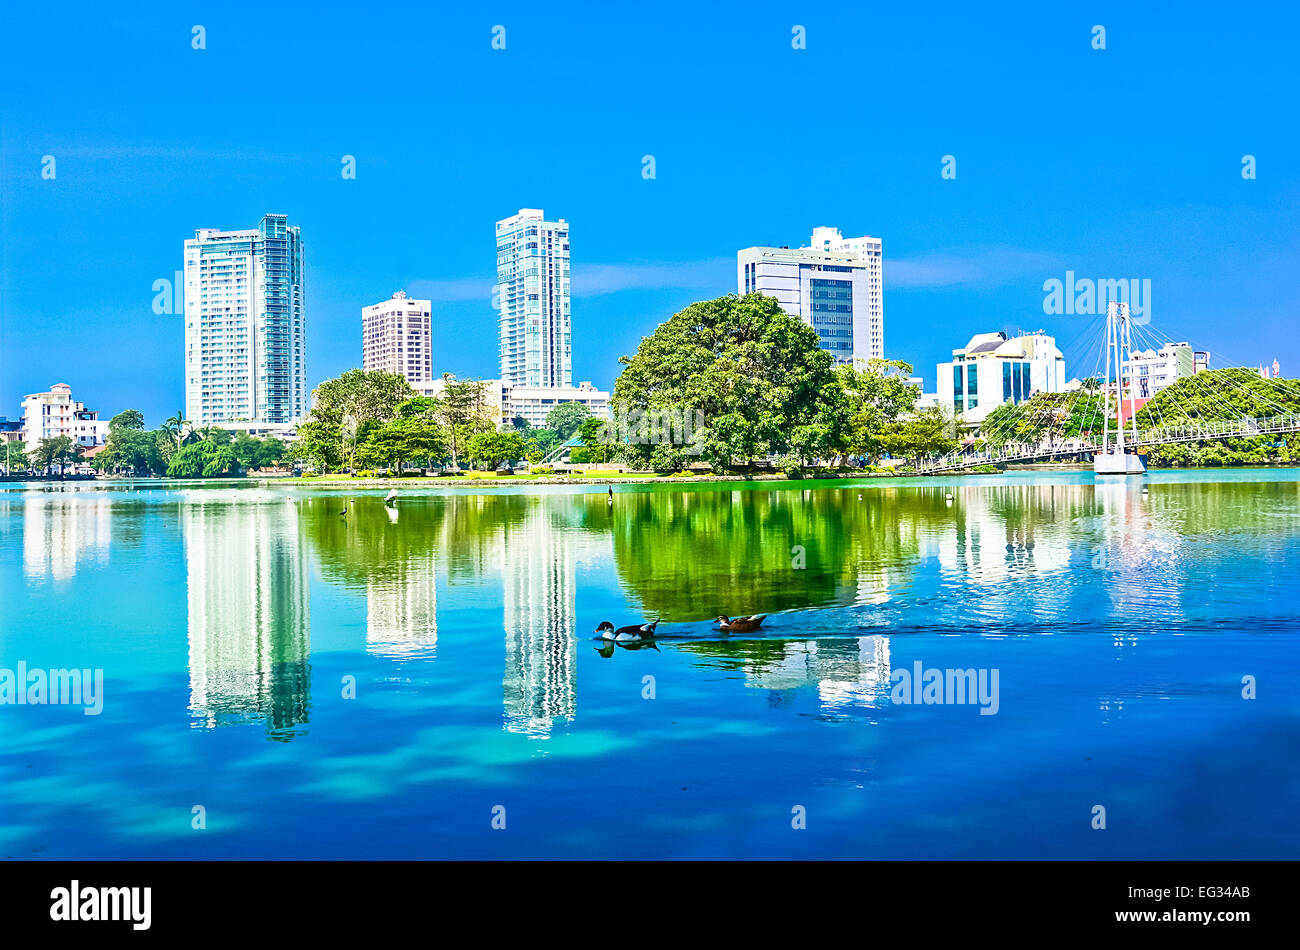 Colombo Beira Lake und Skyline, einem See im Herzen der Stadt Colombo umgeben von vielen großen Unternehmen In der Stadt Stockfoto